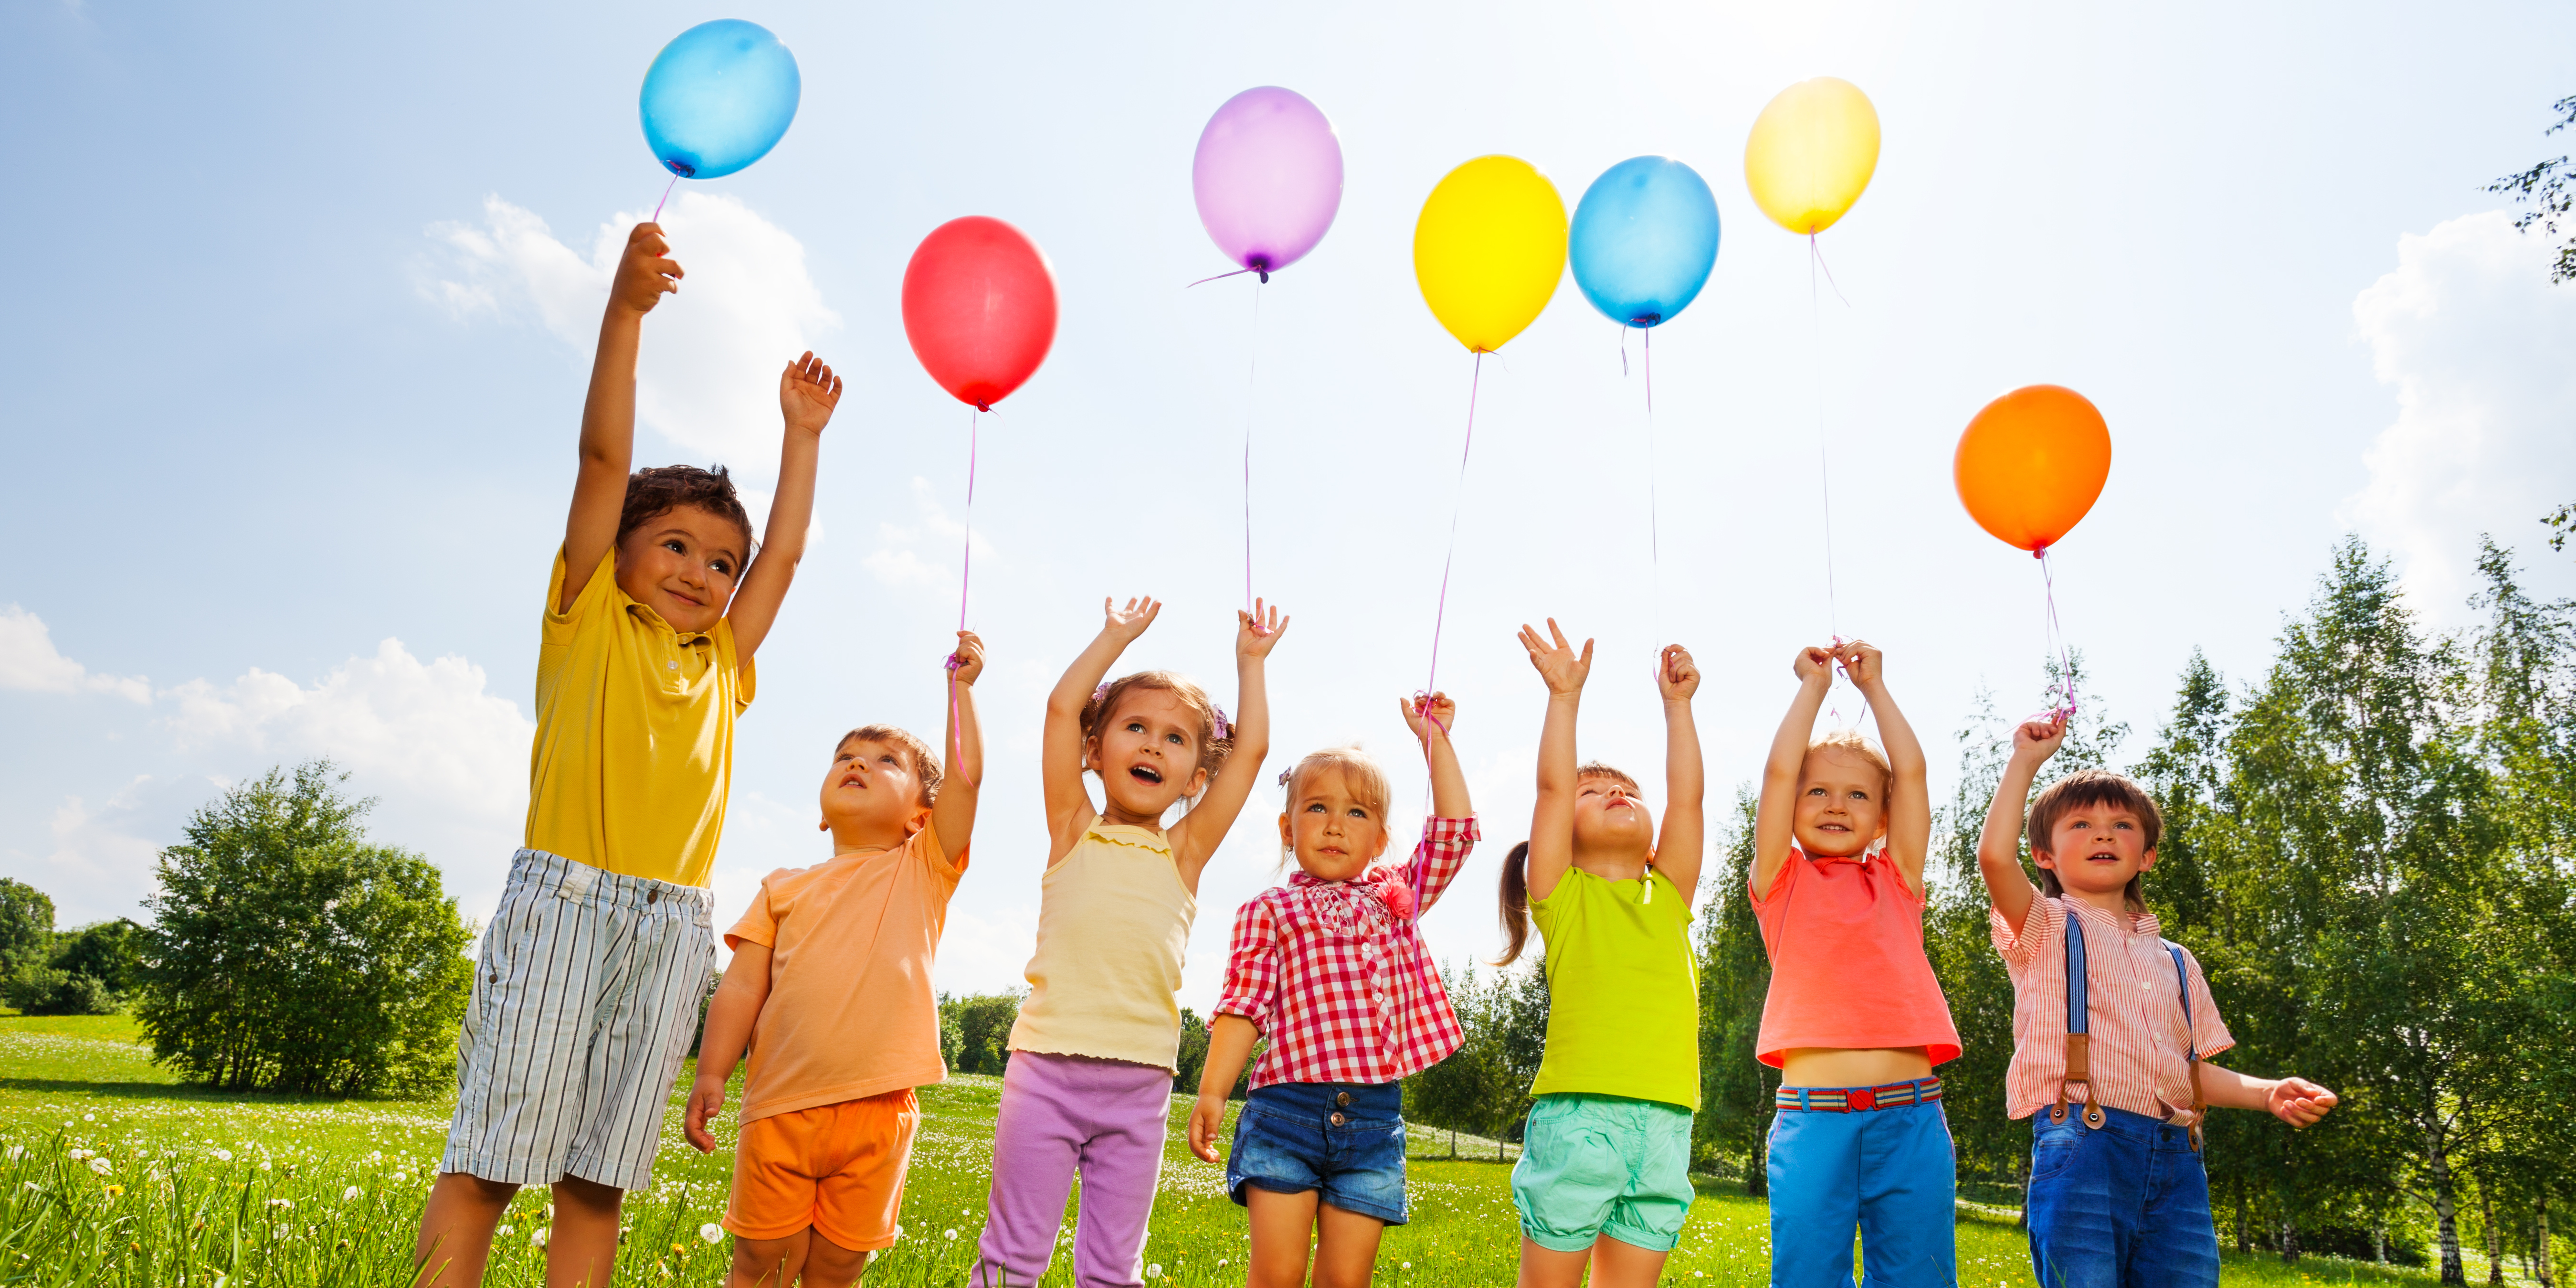 День первых 1 июня. С днем защиты детей. 1 Июня Международный день защиты детей. Летние мероприятия. Дети с шариками.